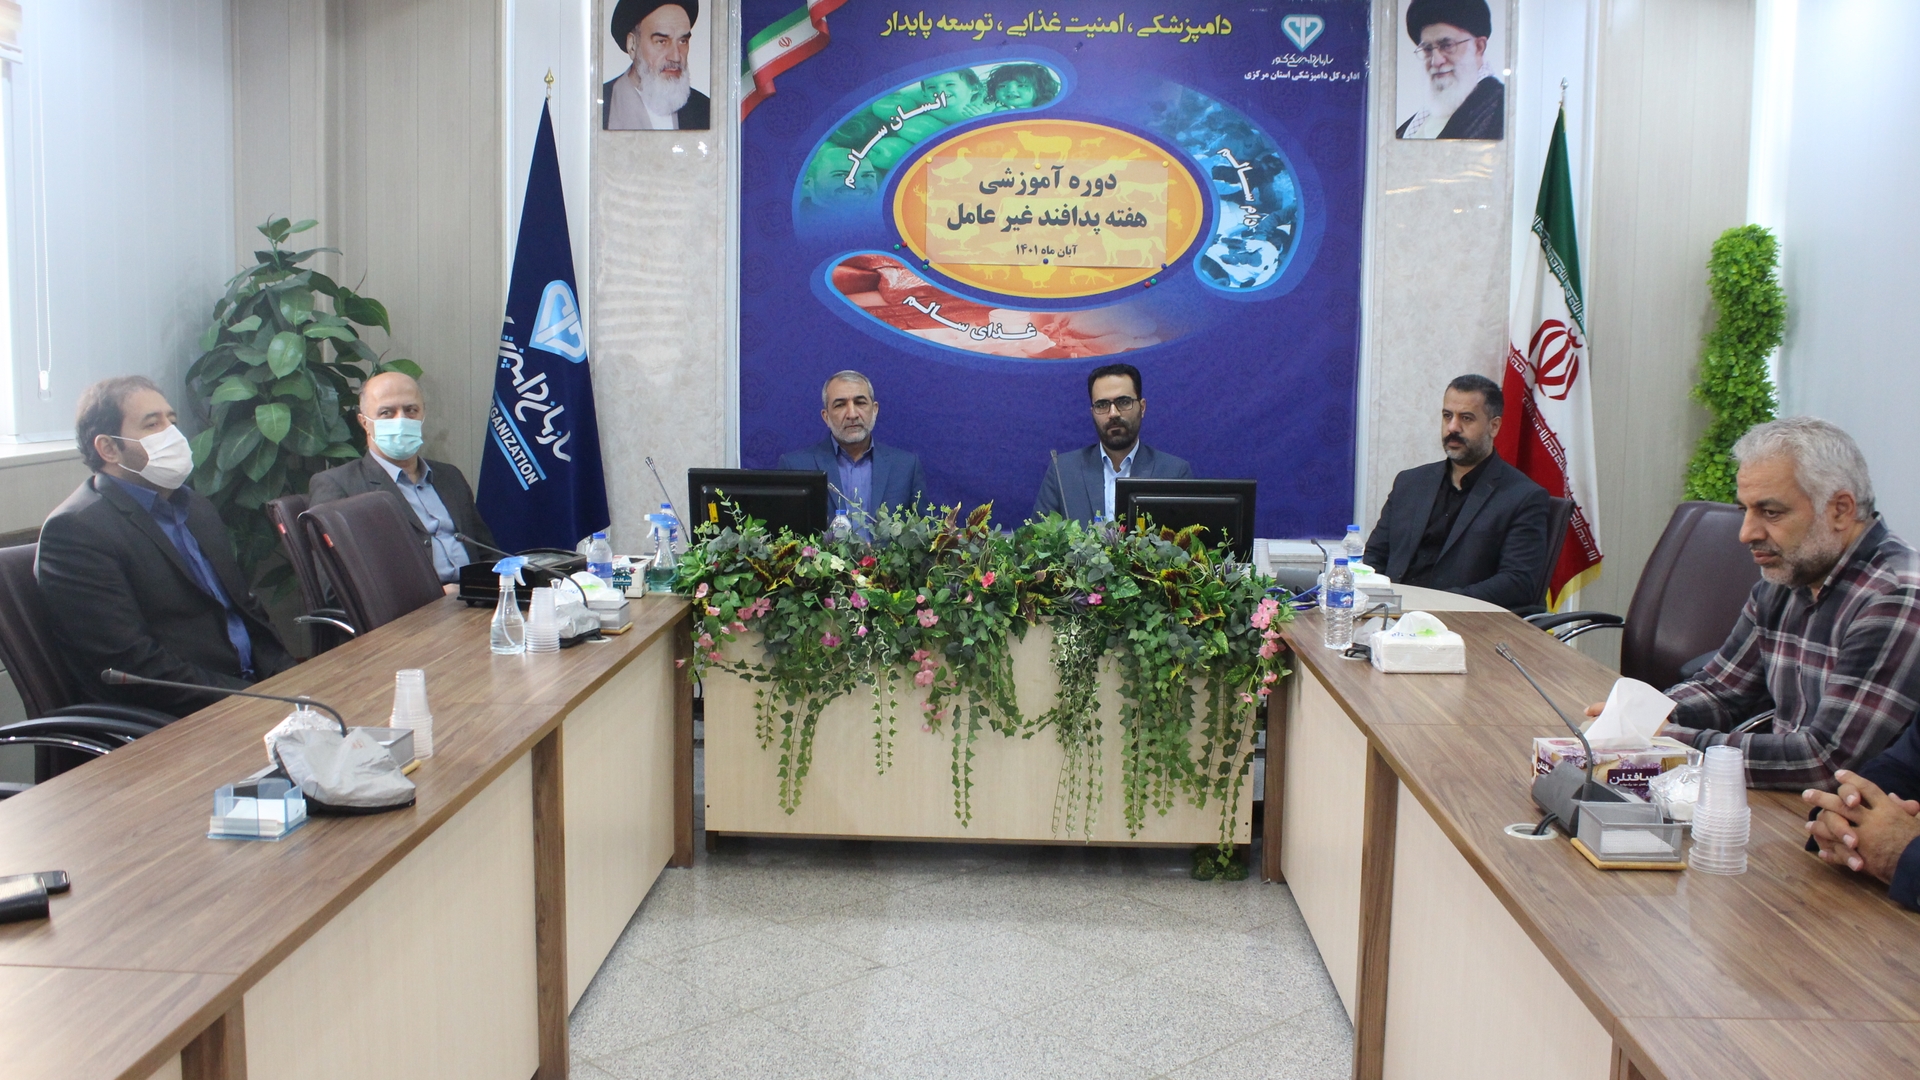 برگزاری دوره آموزشی "مبانی پدافند غیرعامل" در اداره کل دامپزشکی استان